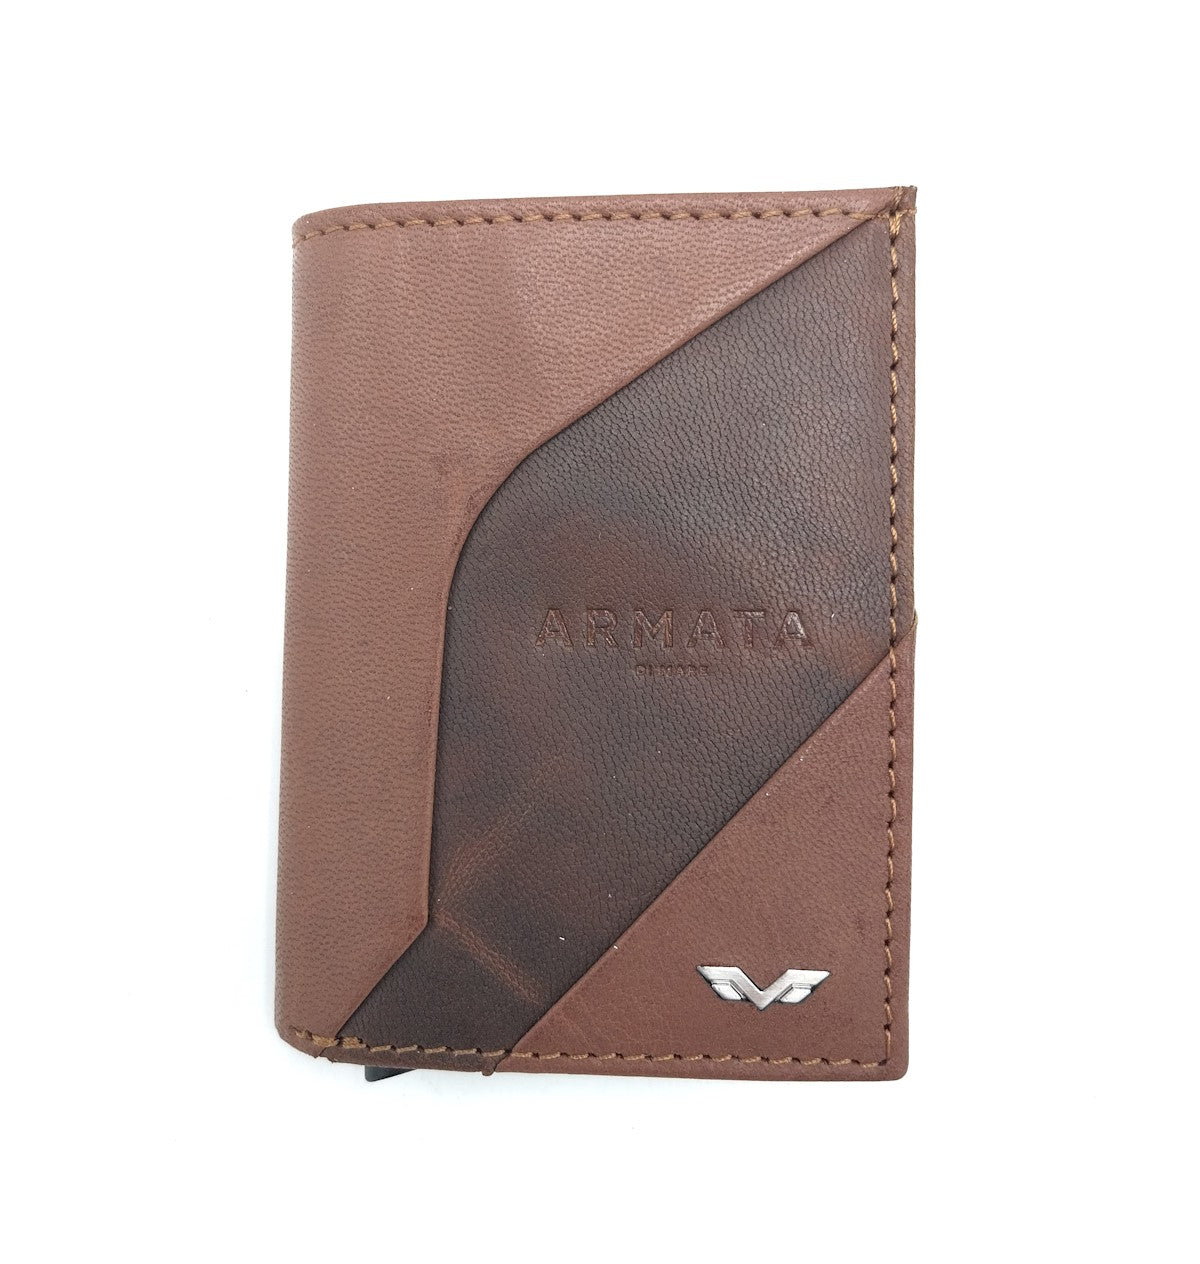 Genuine leather wallet, Armata di Mare, art. PDK378-82